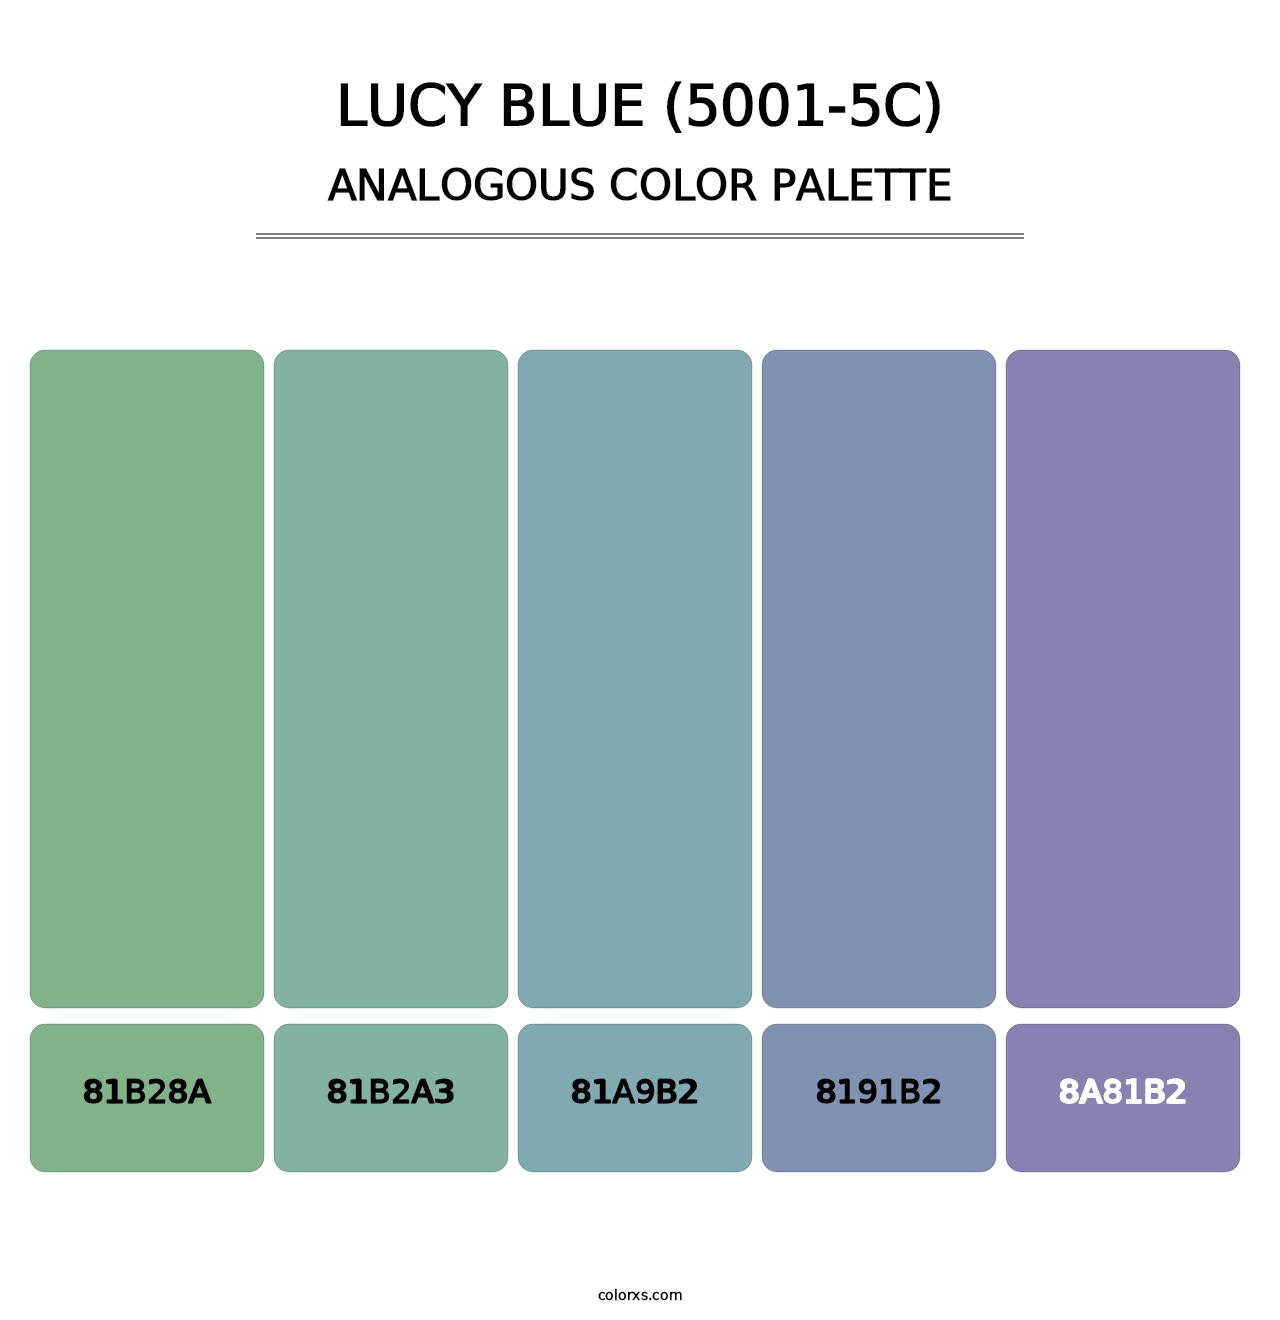 Lucy Blue (5001-5C) - Analogous Color Palette